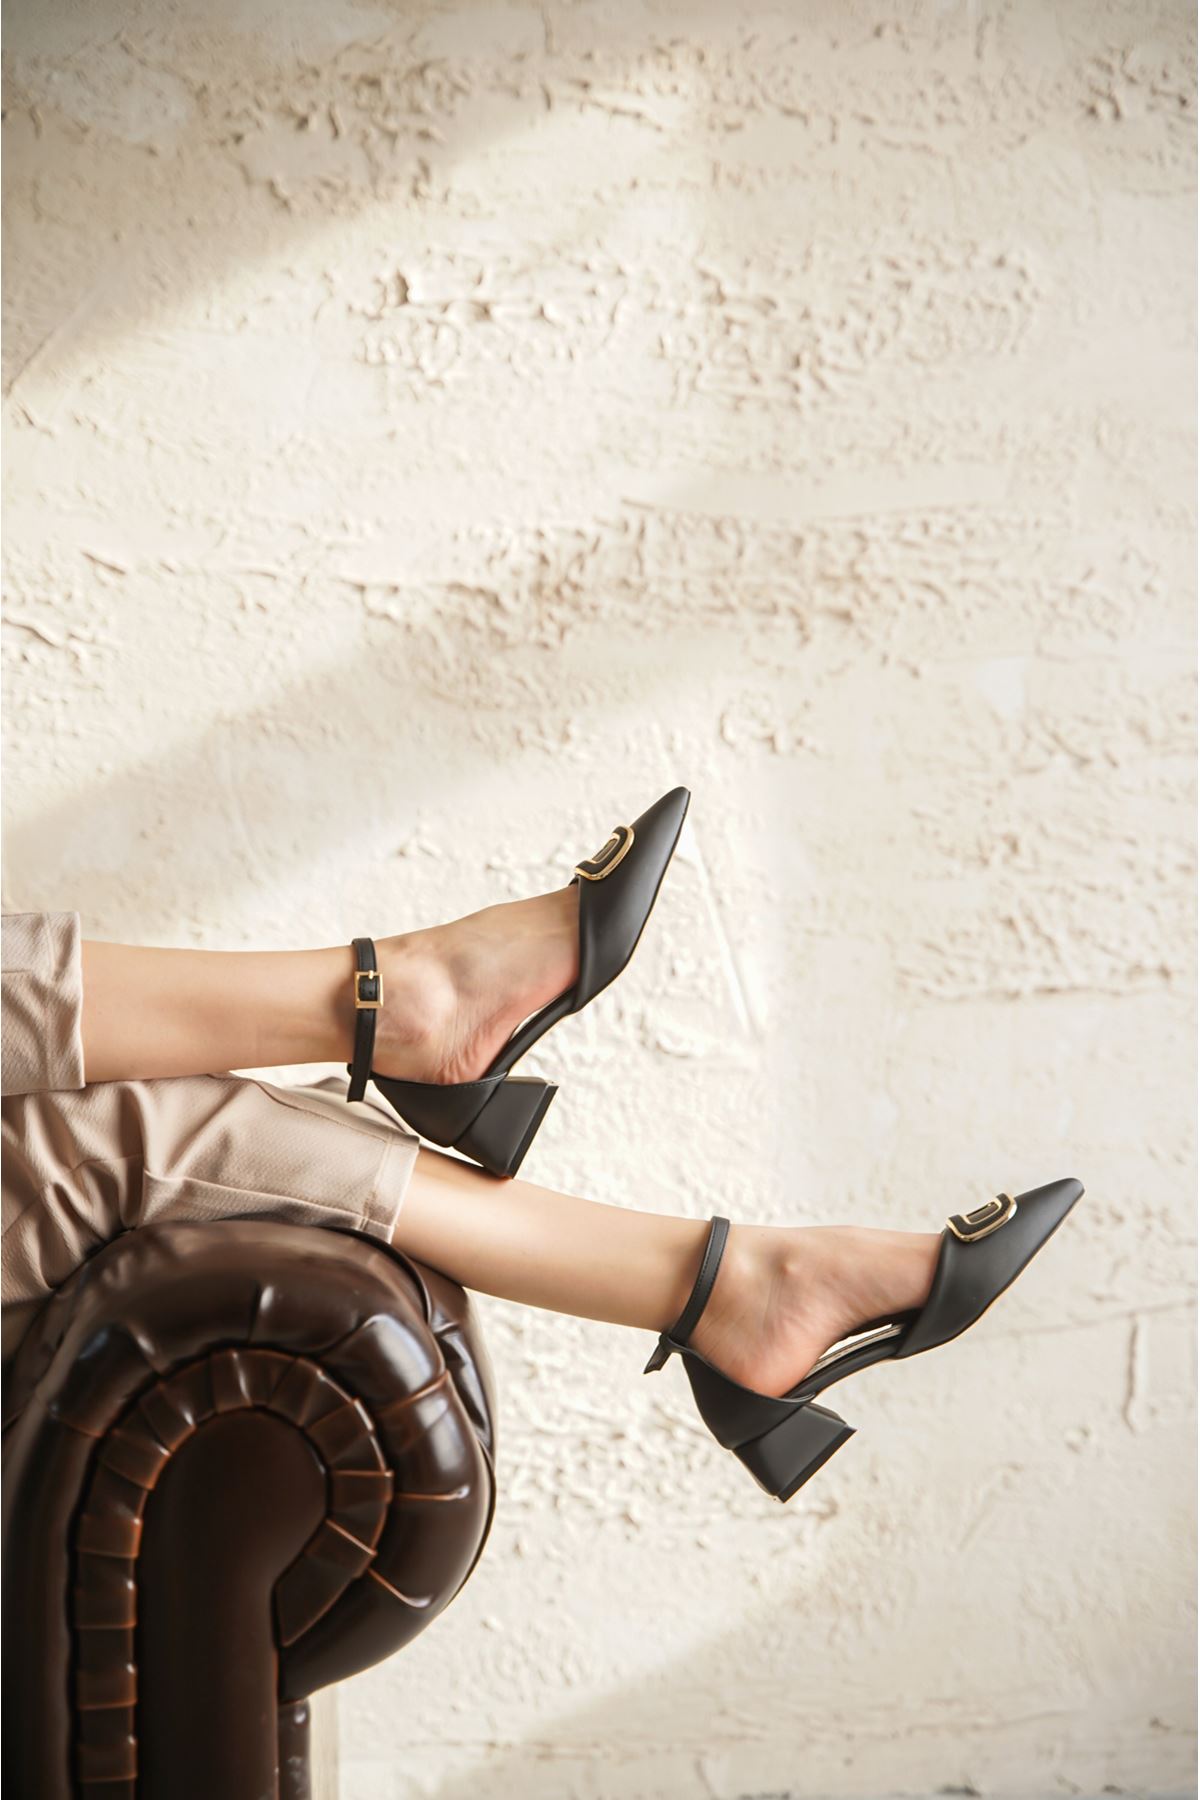 Kadın Cora Tokalı Kısa Topuklu Ayakkabı - Siyah